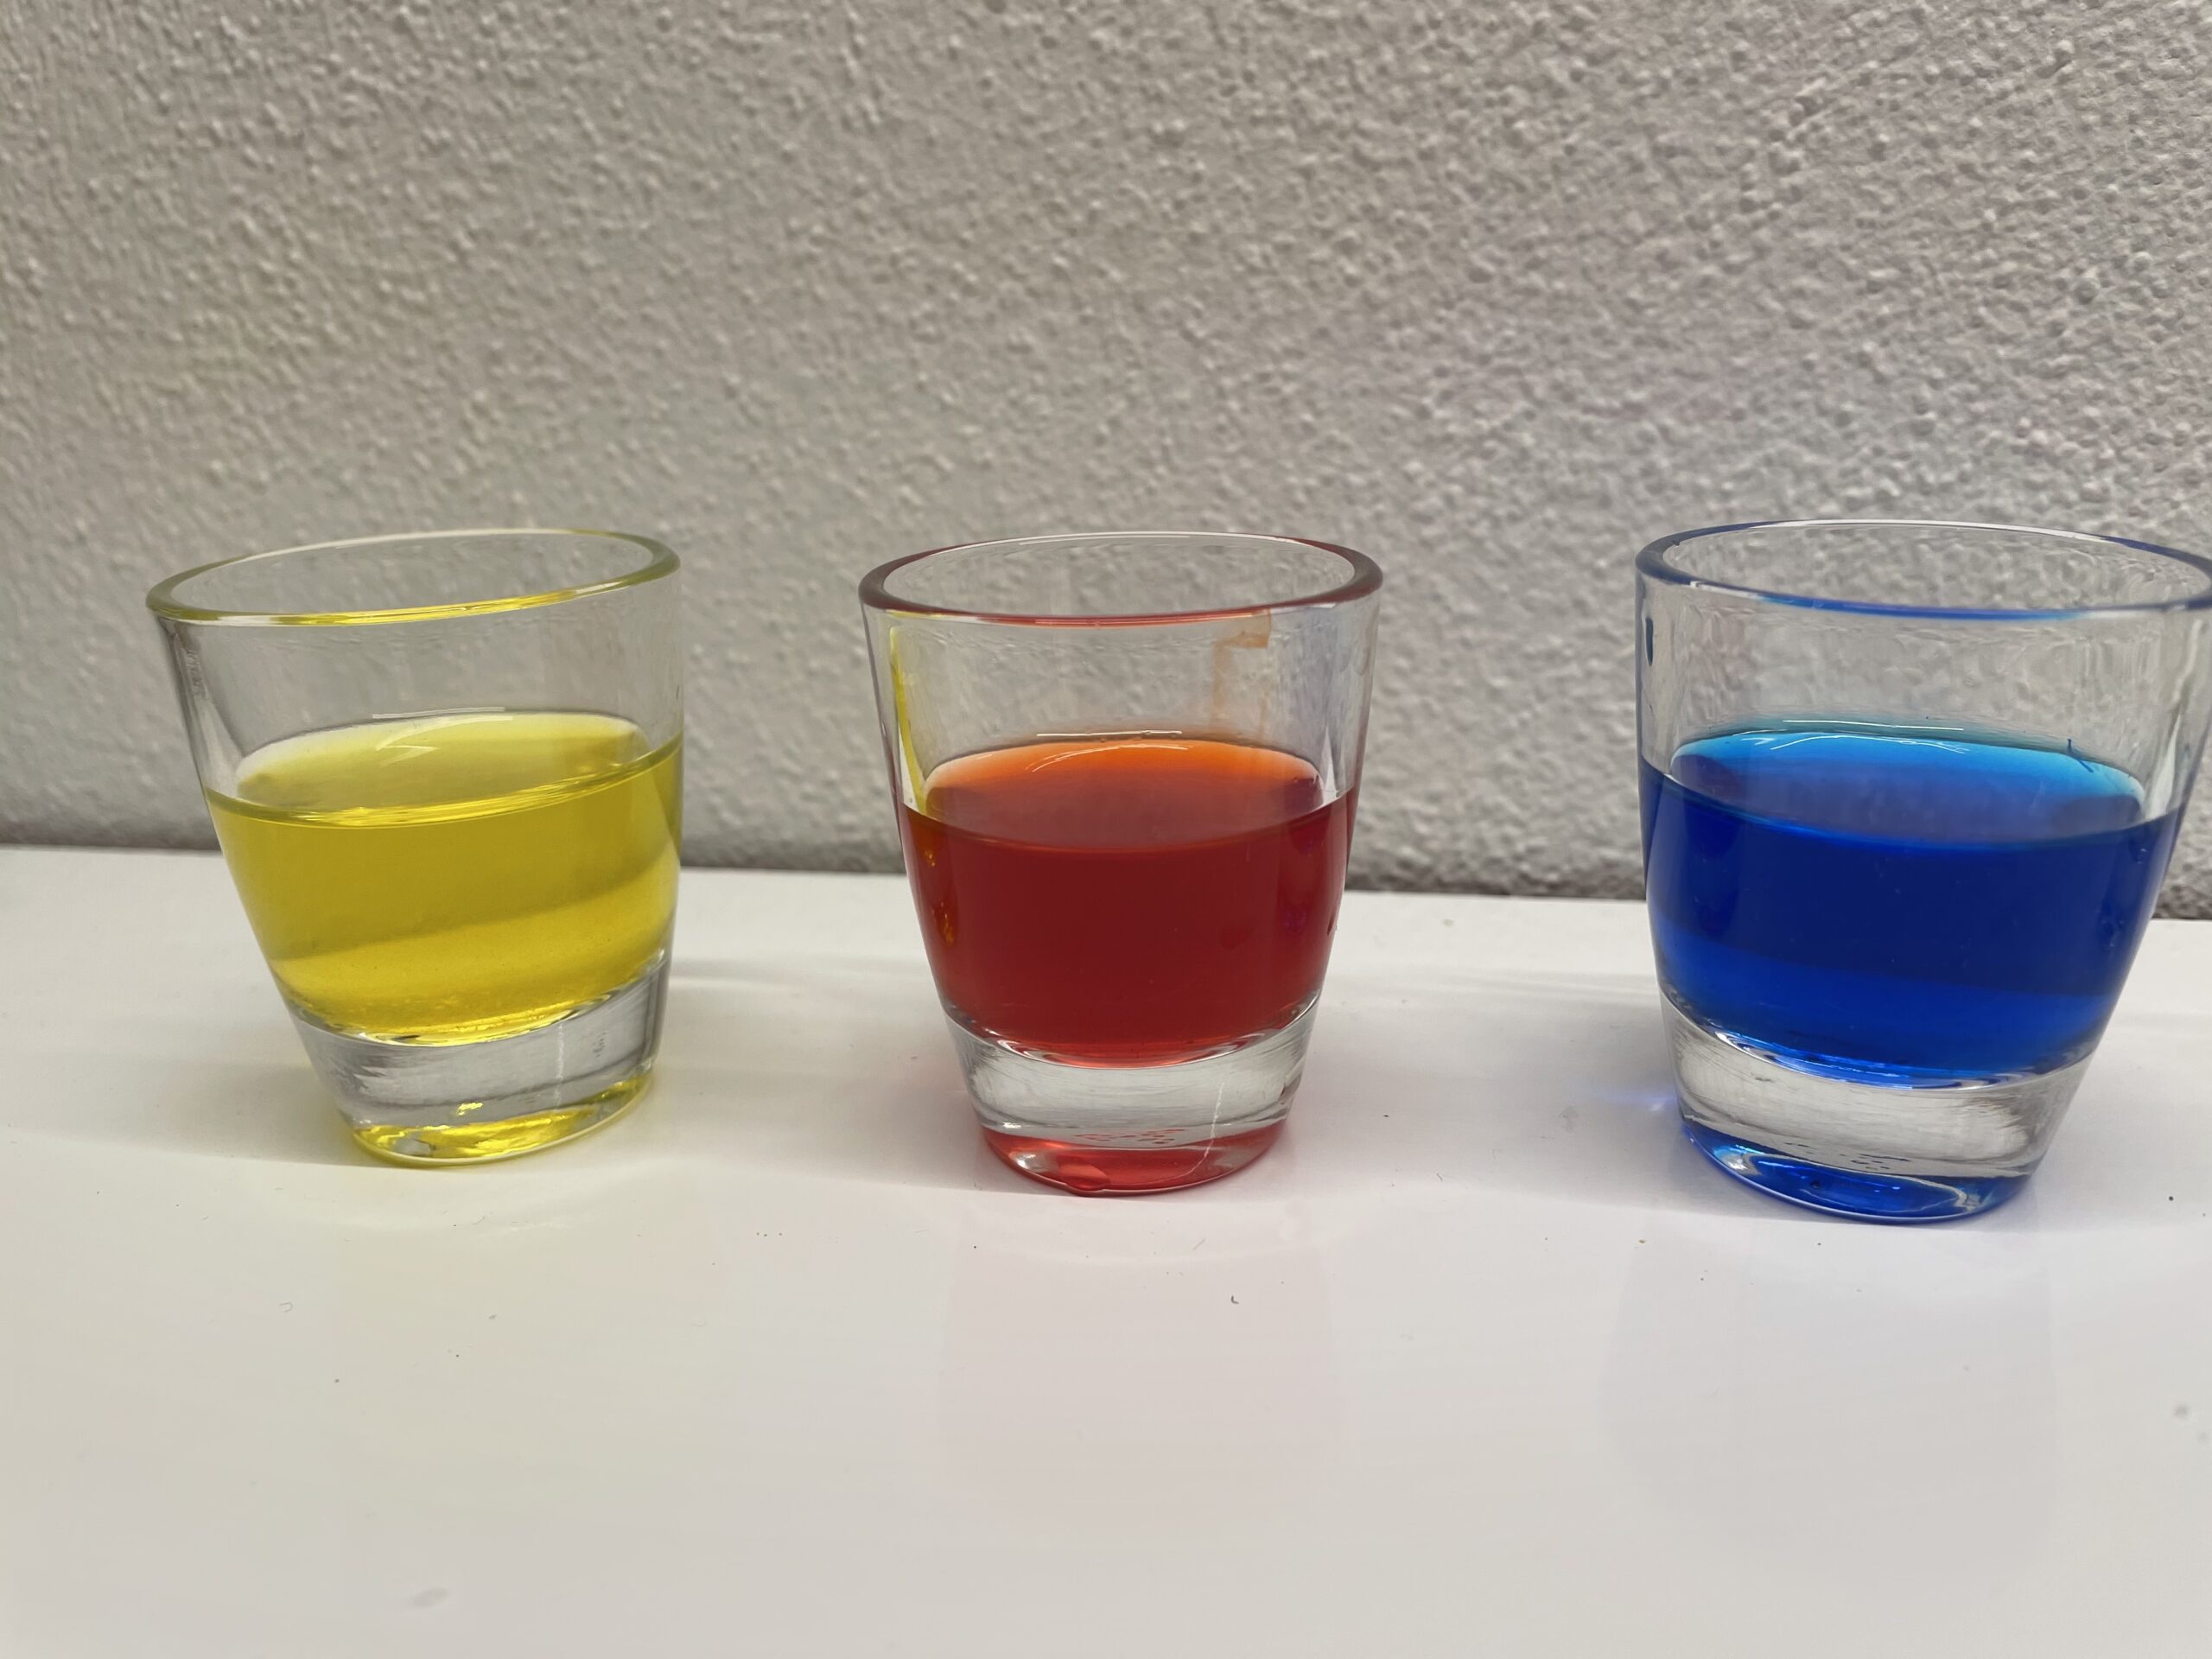 Bild zum Schritt 11 für das Bastel- und DIY-Abenteuer für Kinder: 'So erhaltet ihr drei Gläser mit leuchtenden Wasserfarben.'